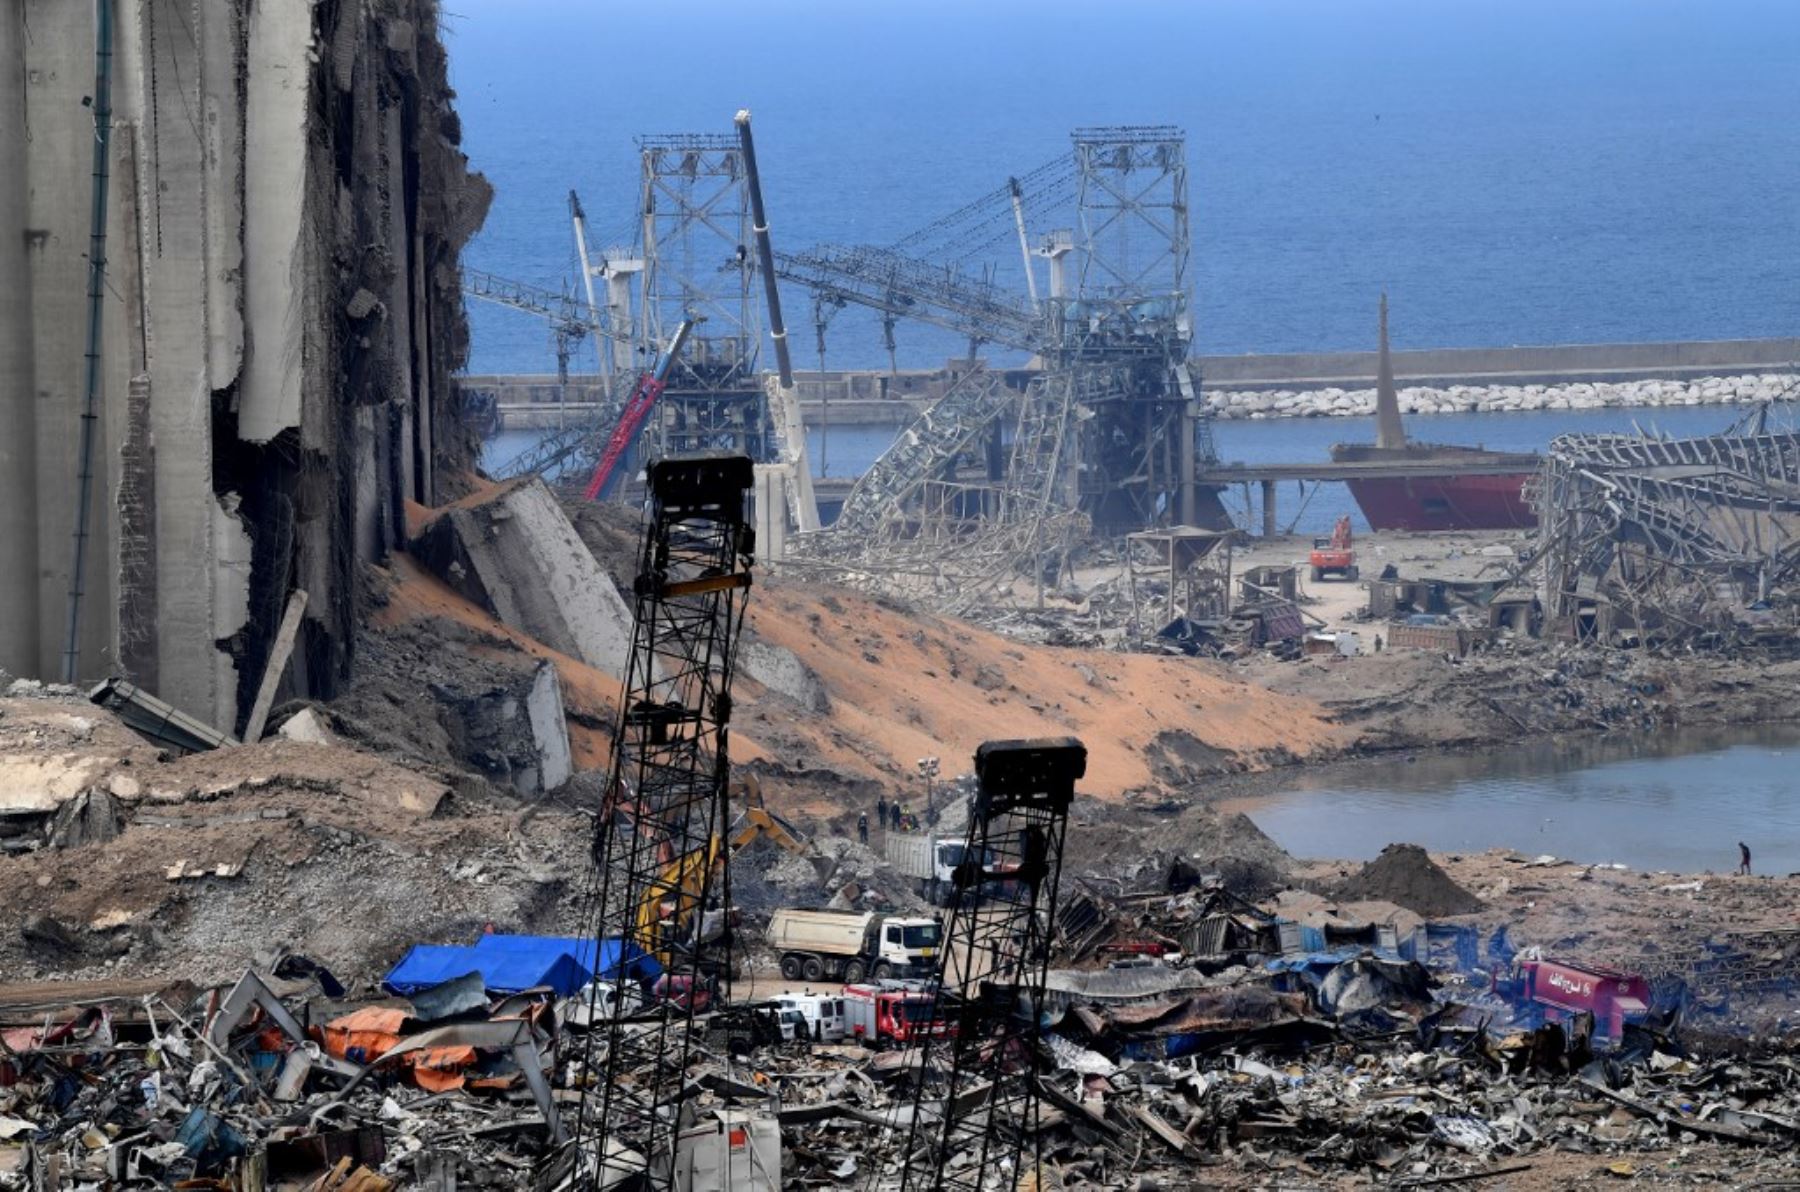 Una fotografía tomada el 7 de agosto de 2020 muestra una vista de silos de grano destruidos en medio de la devastación en el puerto de Beirut, el lugar de una explosión masiva que sacudió la capital libanesa. Foto: AFP